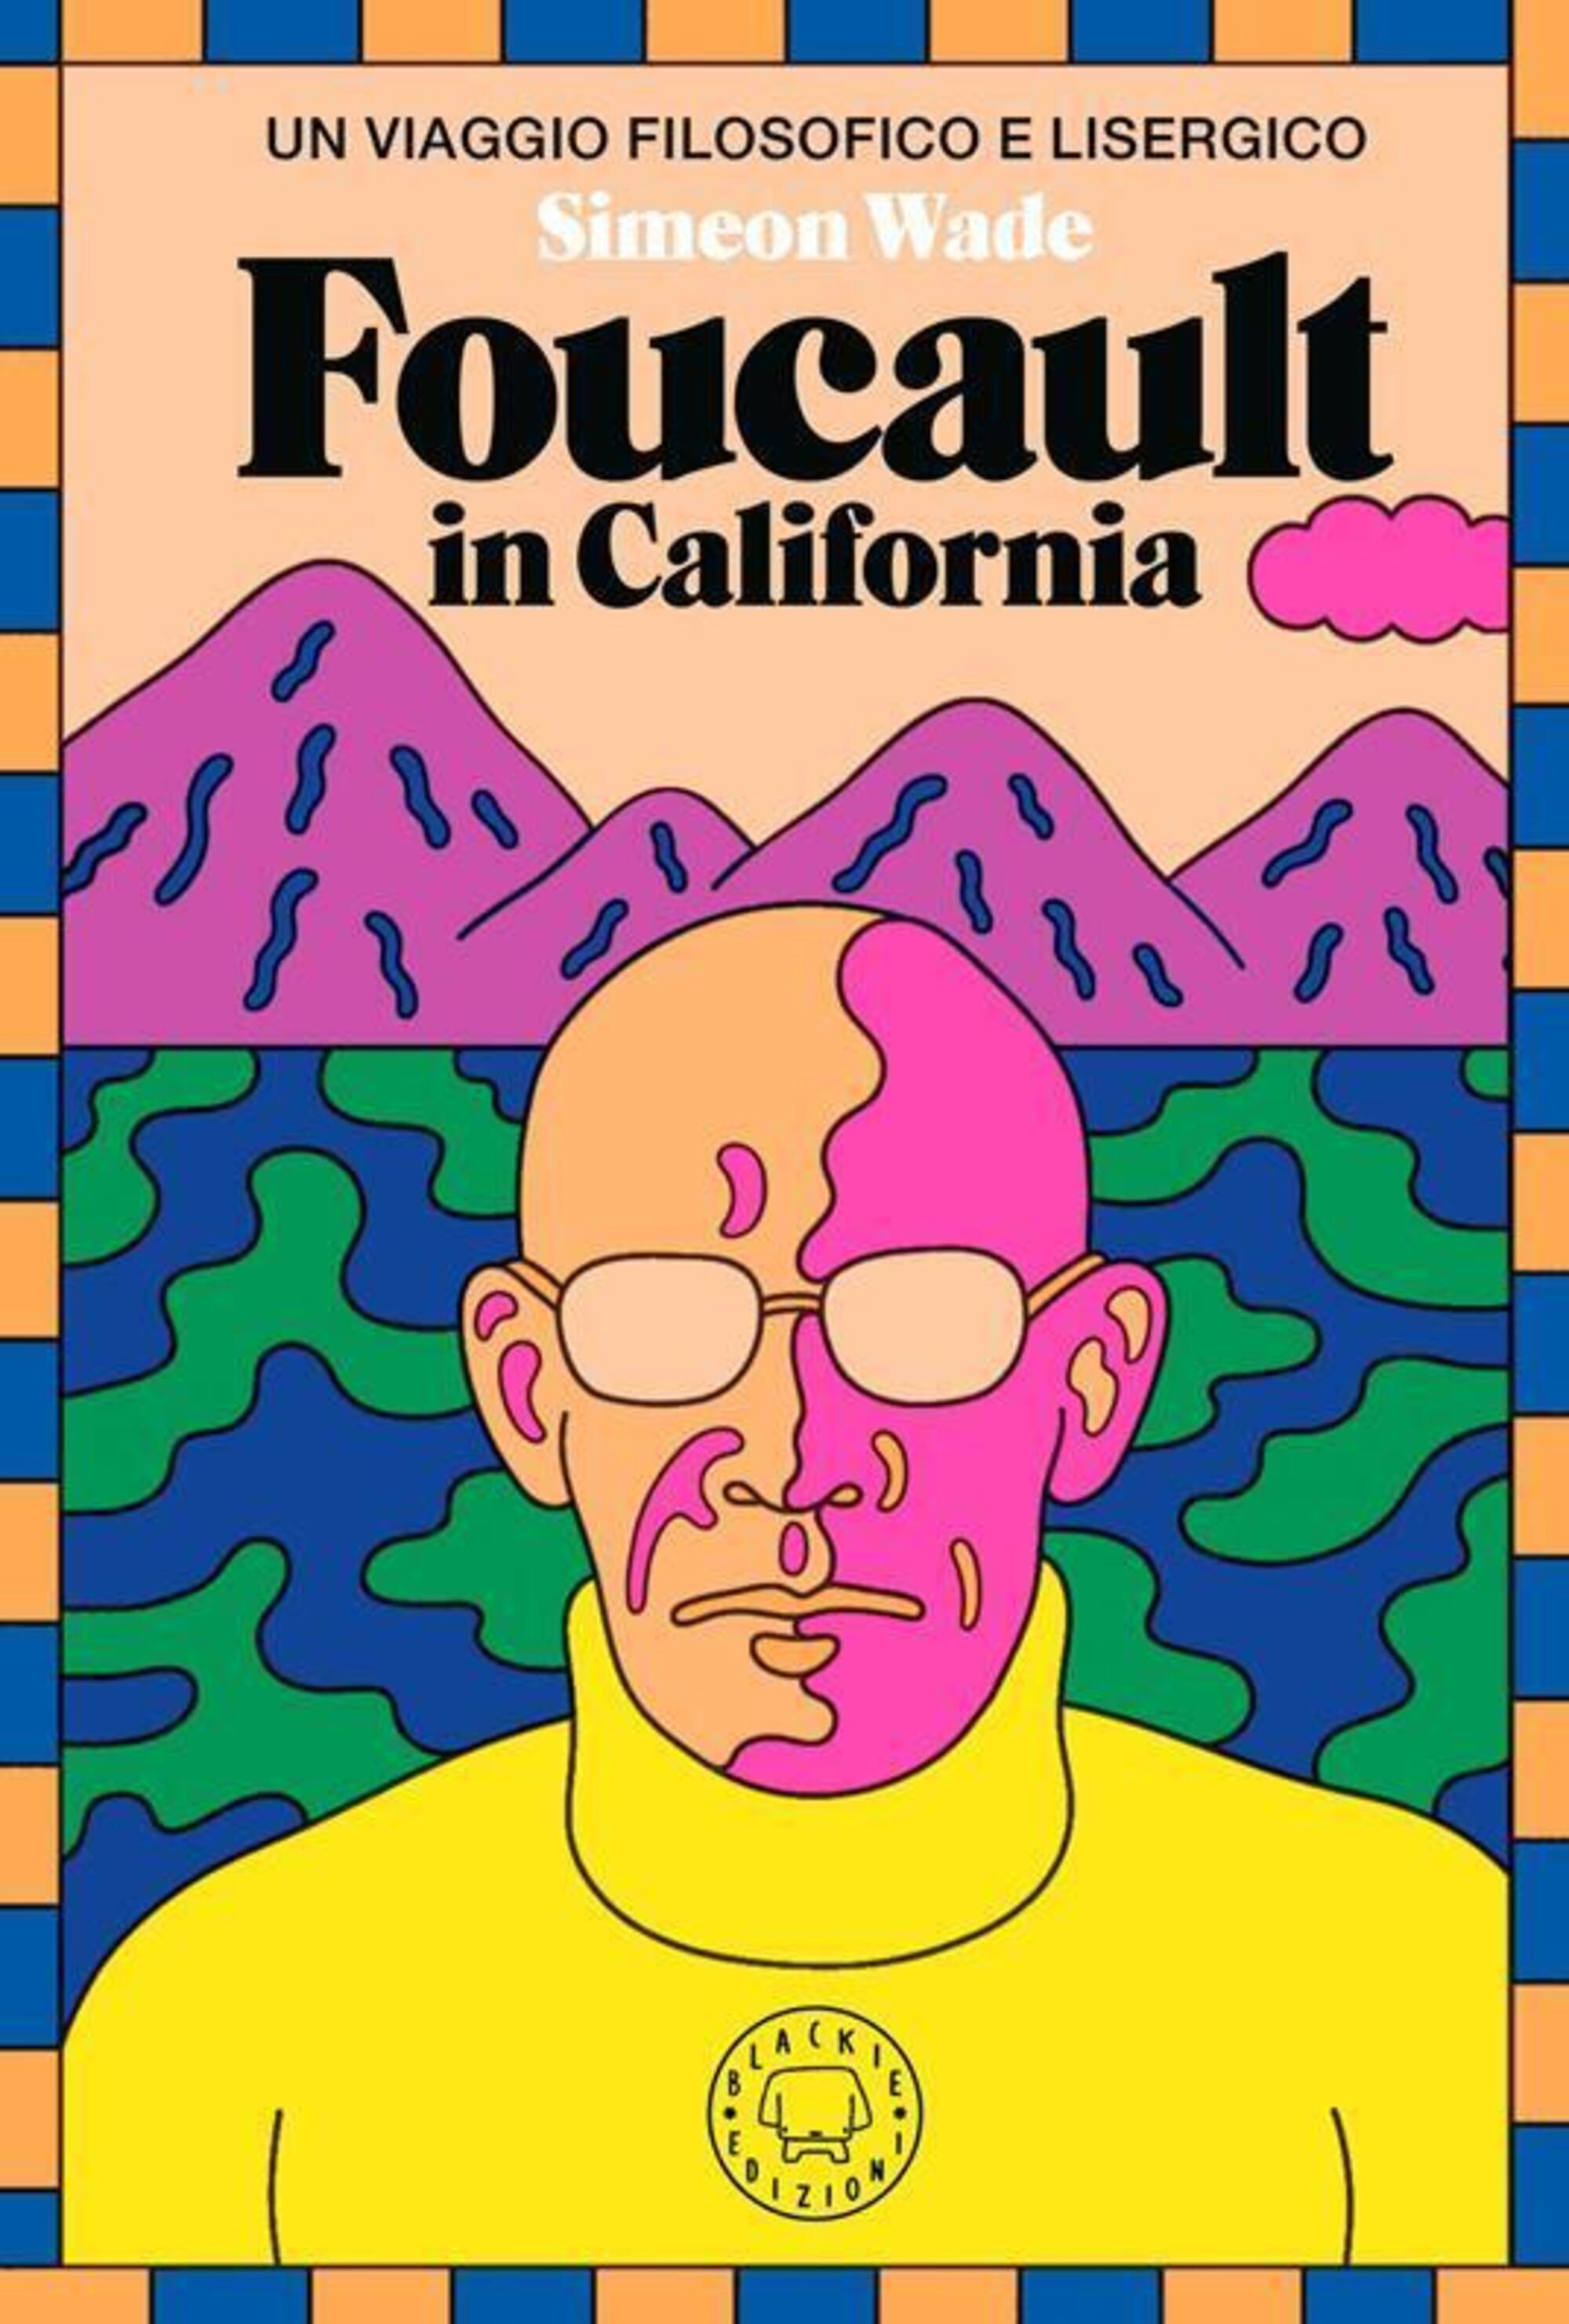 La copertina di Foucault in California (Blackie edizioni)